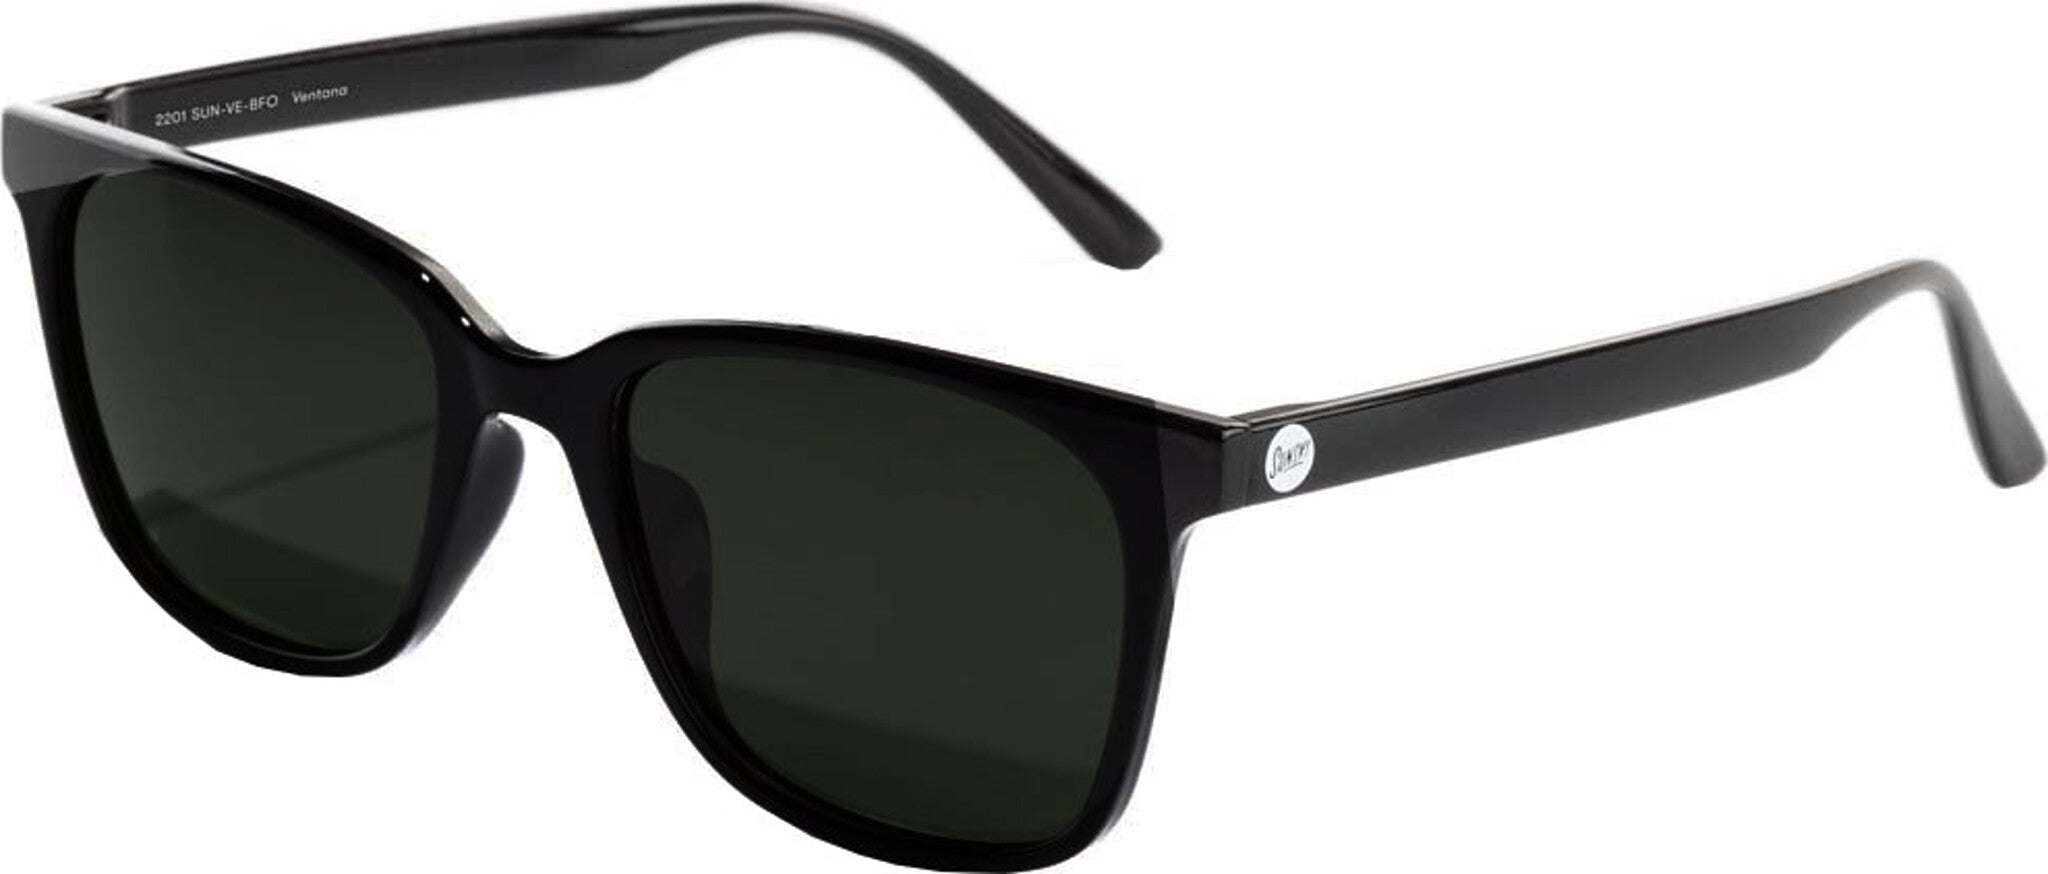 Sunski Ventana Sunglasses OS Black Forest